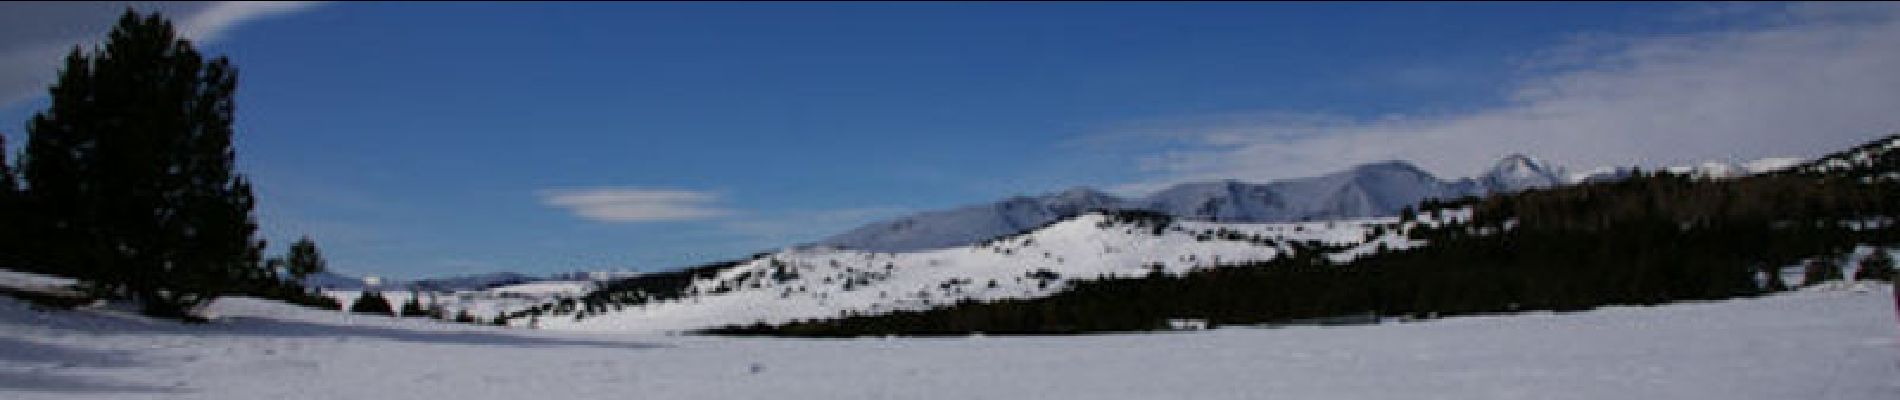 Tour Schneeschuhwandern Font-Romeu-Odeillo-Via - Les Airelles - Mollera dels Clots  - Photo